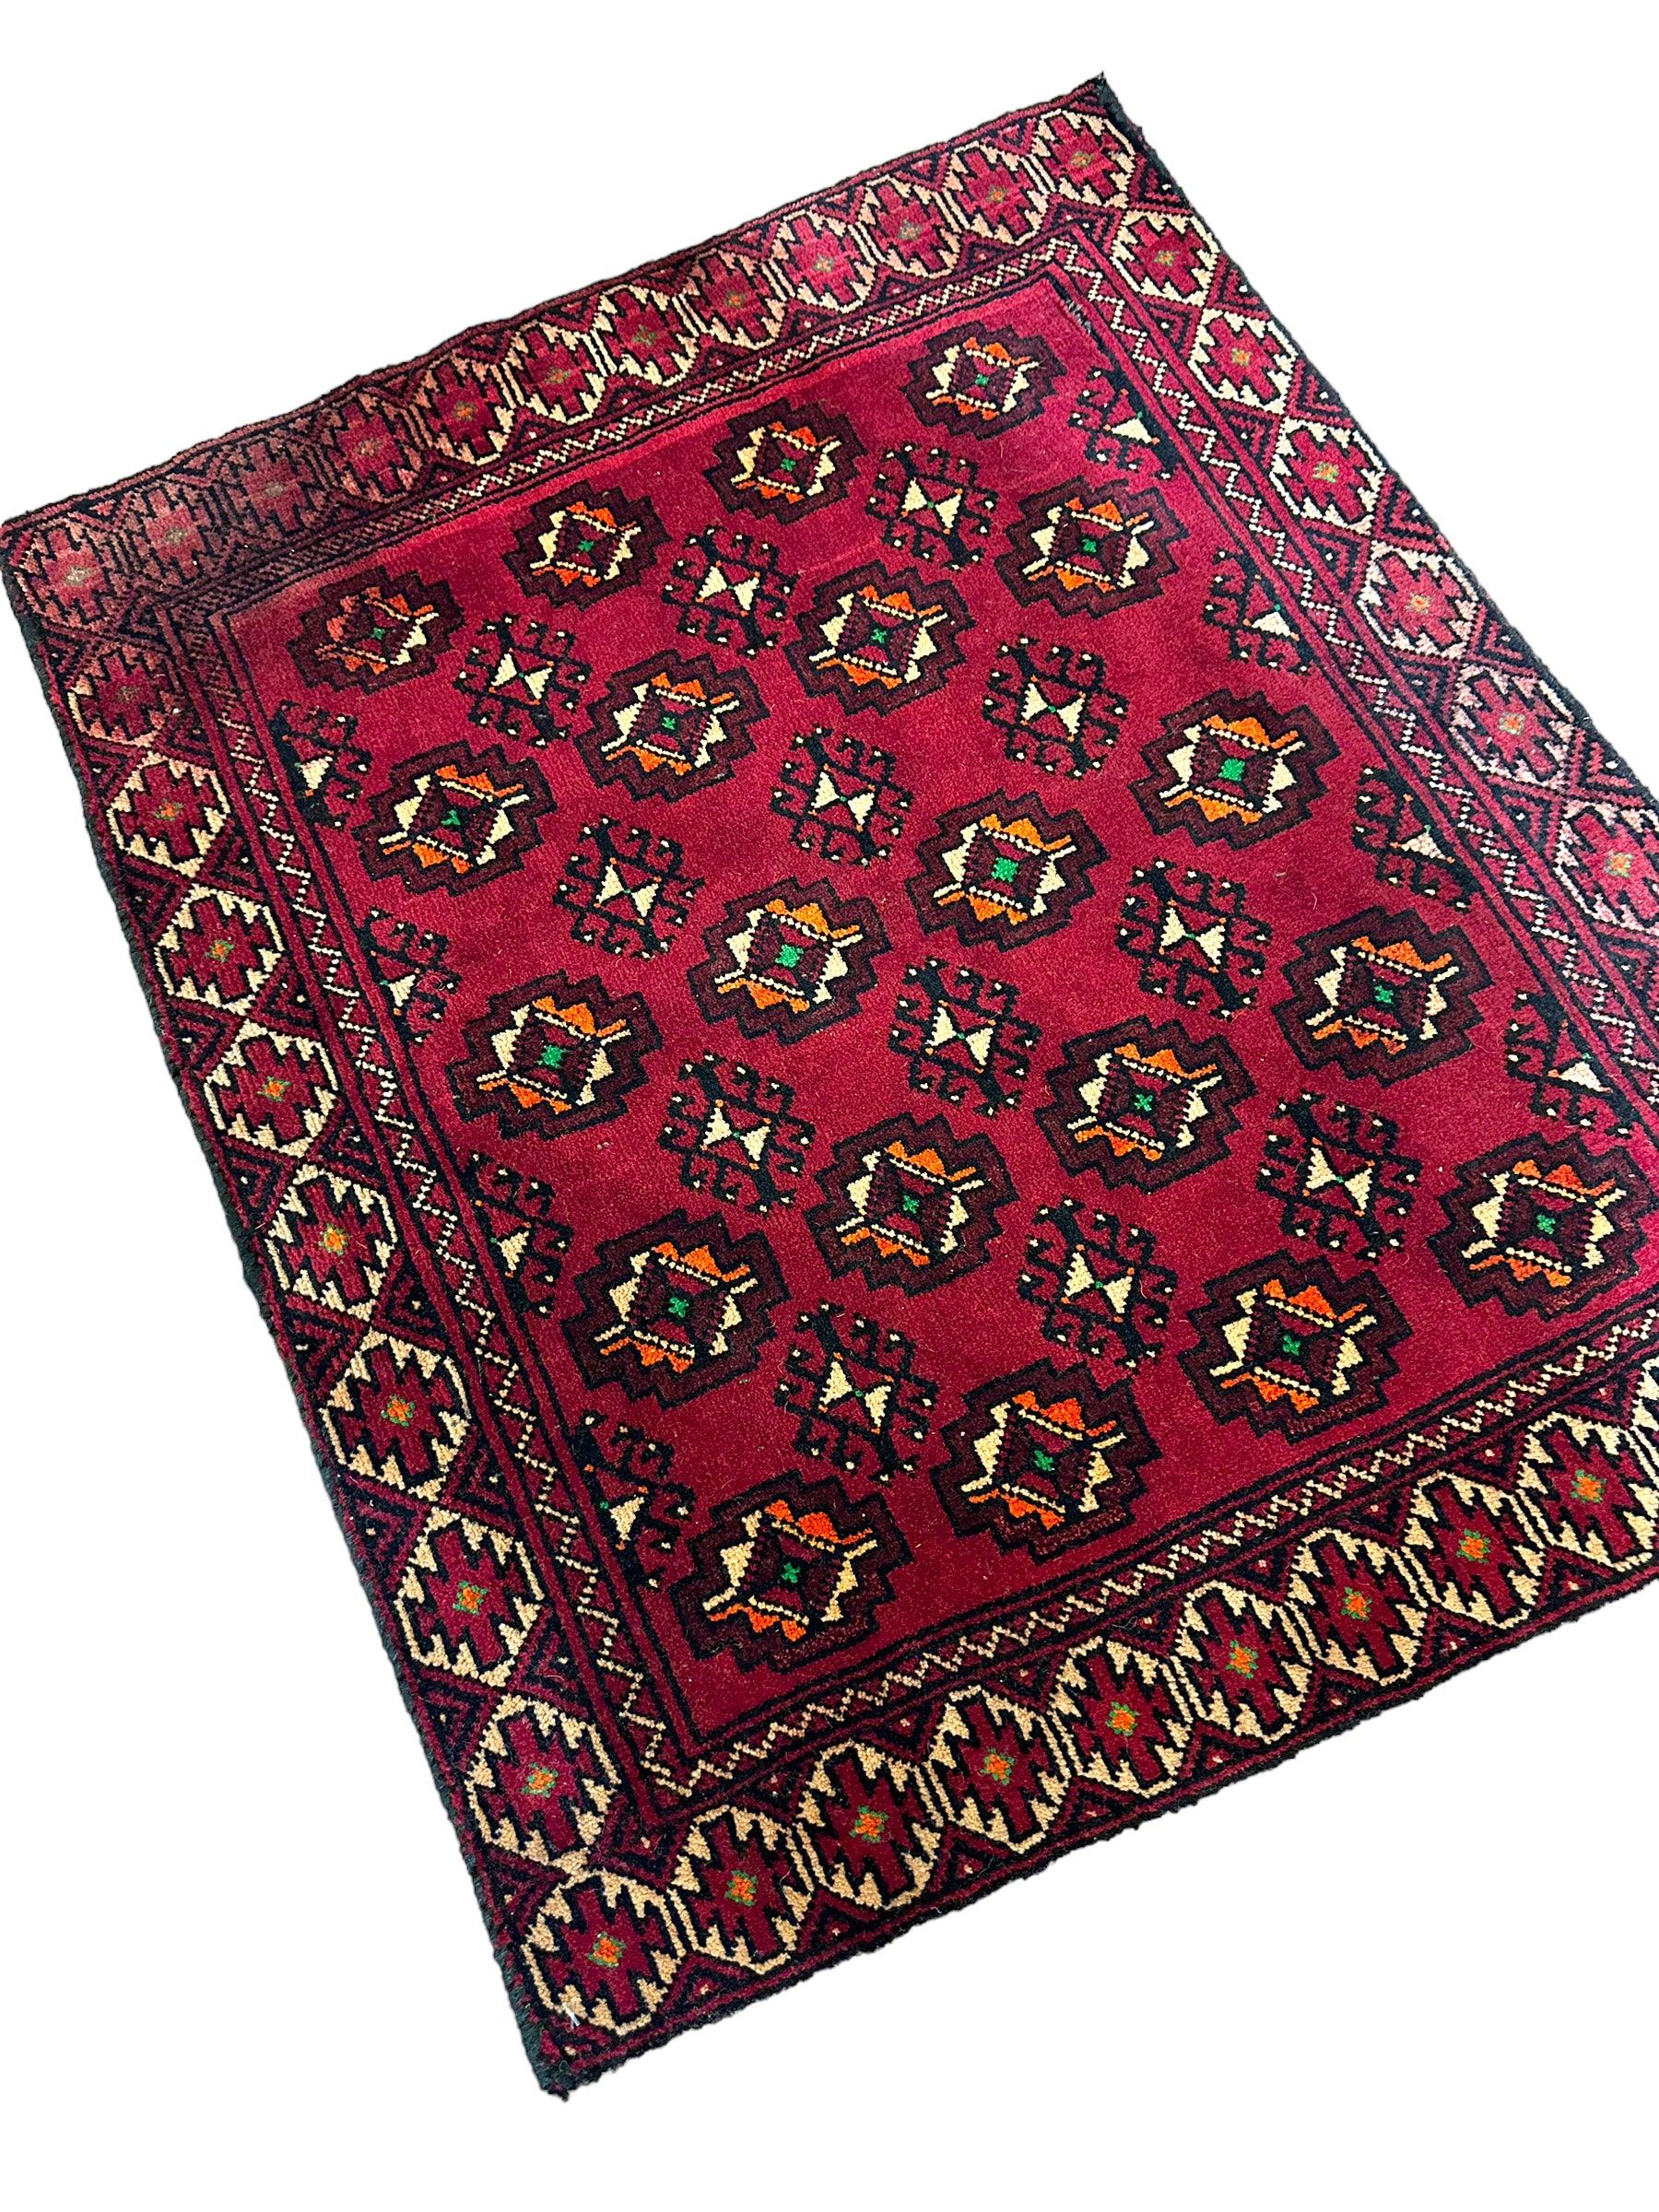 Vintage Tribal Afghani Wool Rug 2’7” x 2’2”